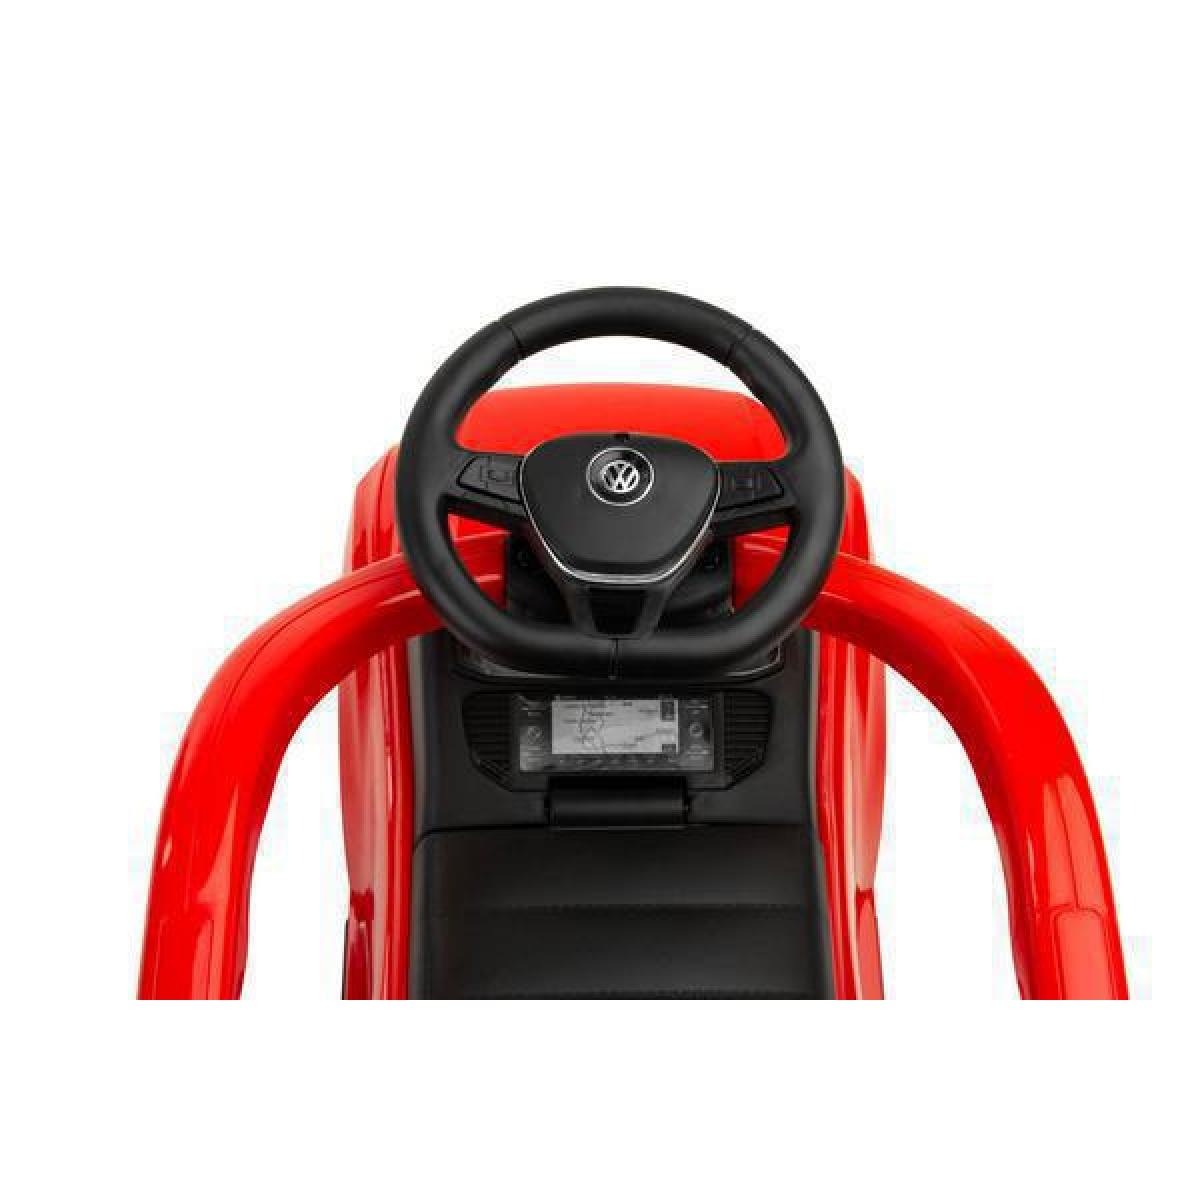 Παιδικό Αμαξάκι - Περπατούρα Ride on Car Με Λαβή VW T-Roc Licenced Product Toyz By Caretero Κόκκινο